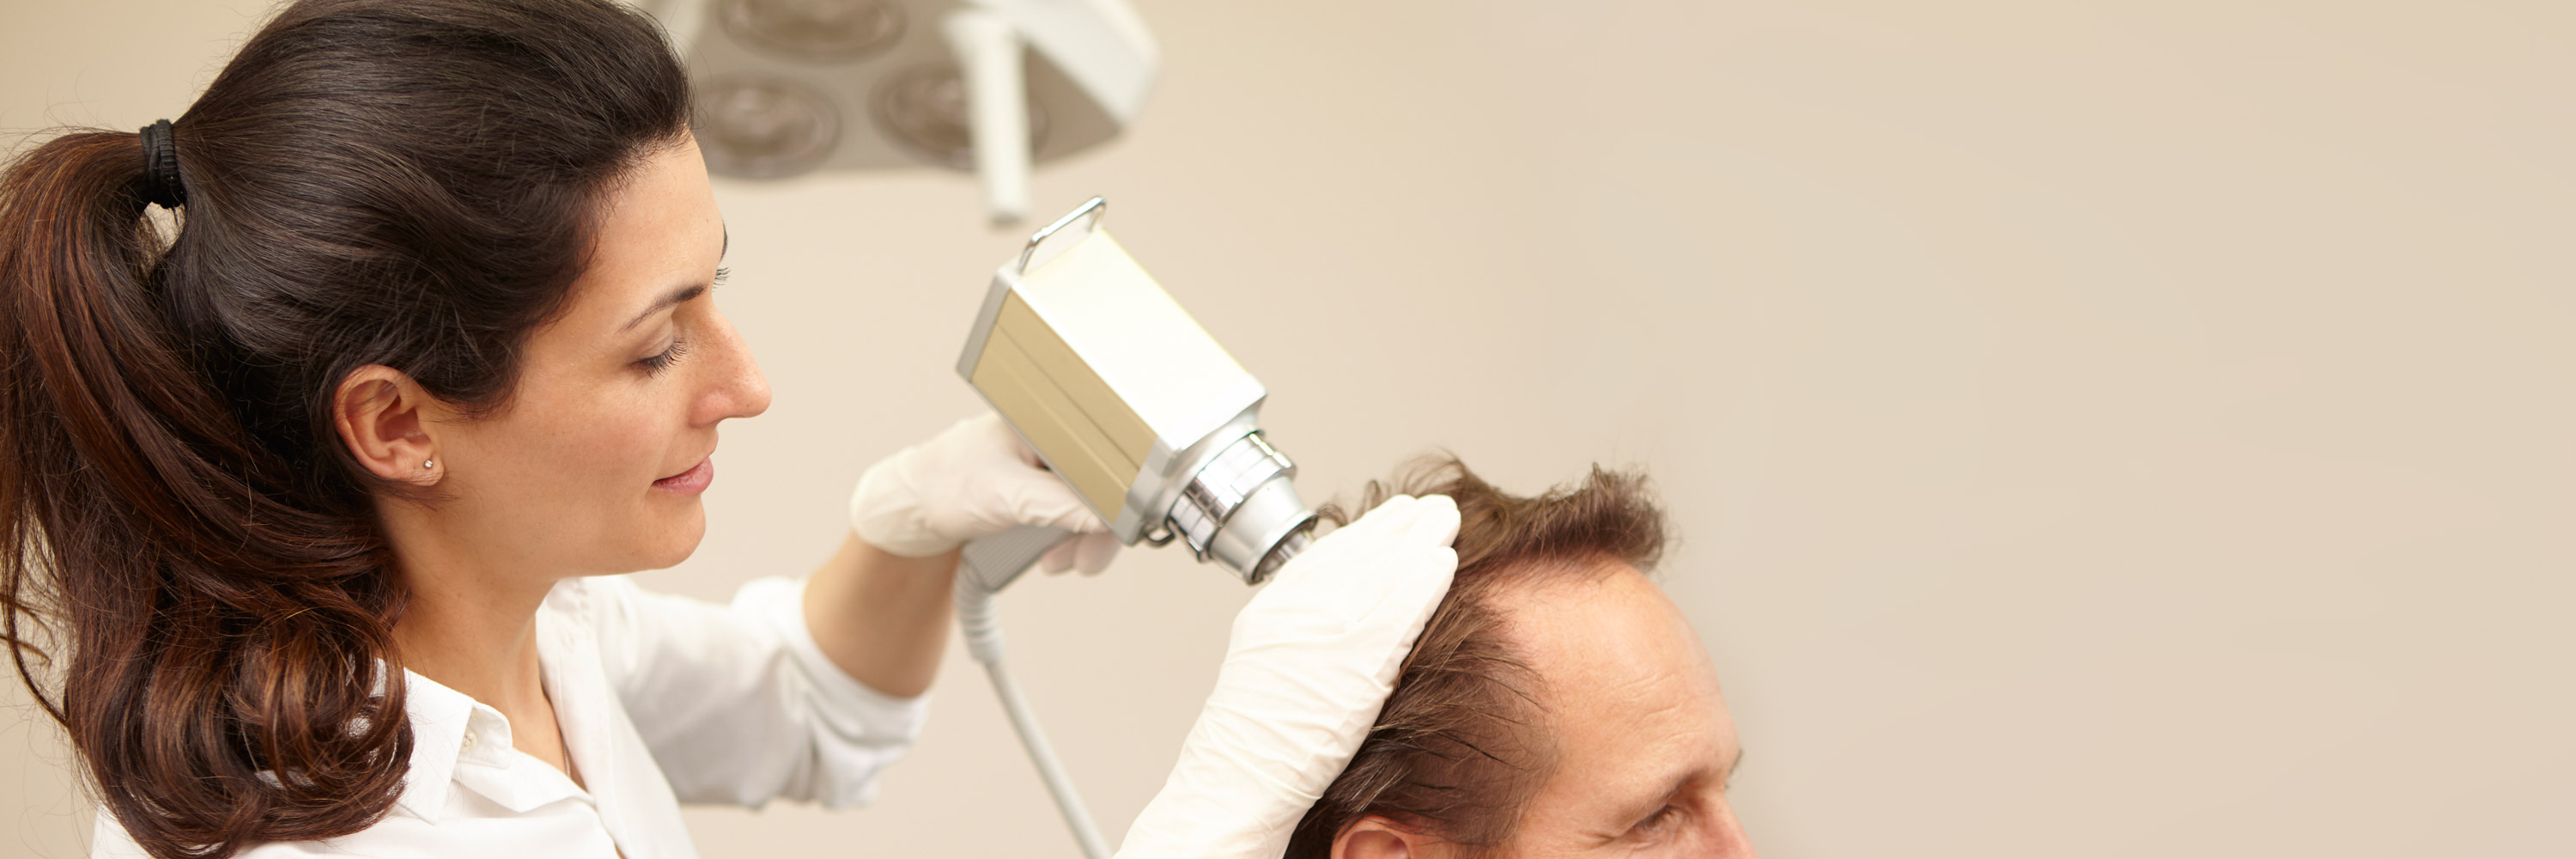 Fachärztin behandelt einen Patienten nach einer ausführlichen Sprechstunde mit der Mesopistole gegen Haarausfall. Die Haarwurzeln am Kopf einer männlichen Person werden durch die Injektionen mit der Mesopistole zum Wachstum angeregt.